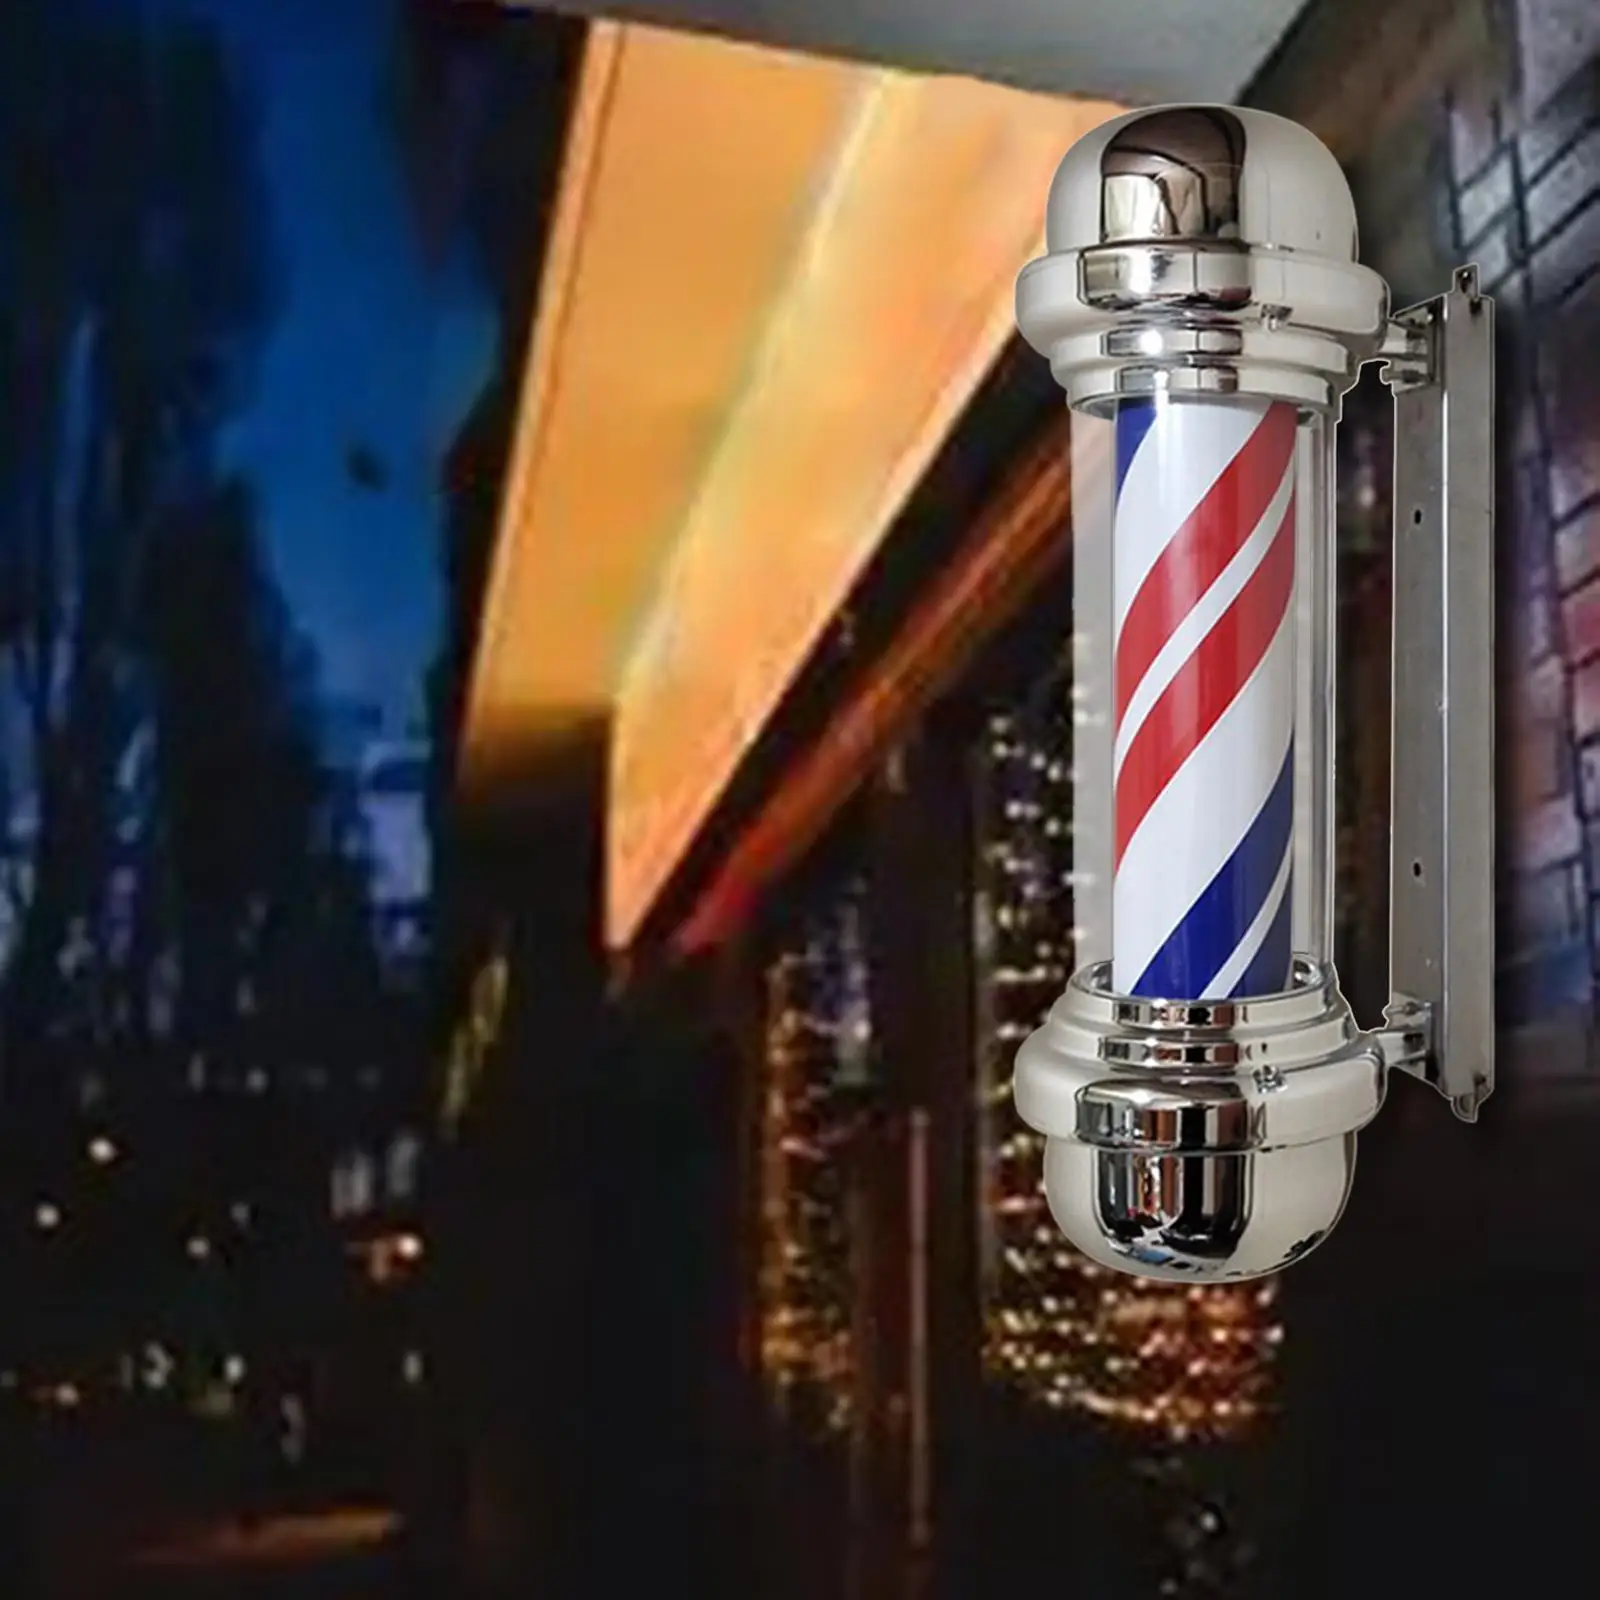 Hair Salon LED Strips Nightlight Rainproof Novelty Lighting Hanging Lights Rotating Barber Pole Light for Street